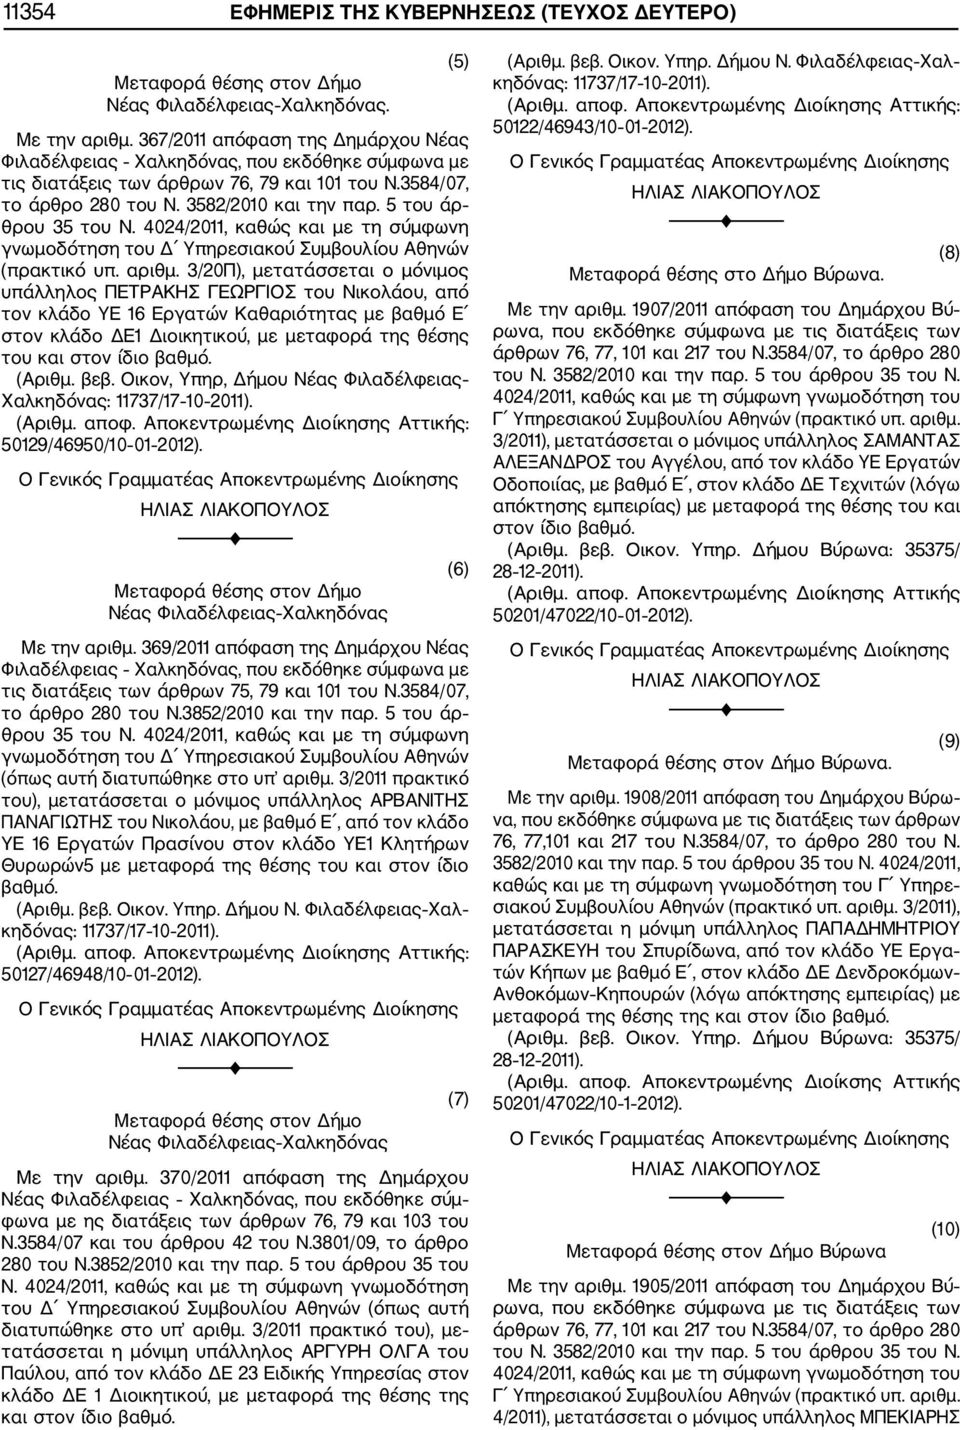 5 του άρ θρου 35 του Ν. 4024/2011, καθώς και με τη σύμφωνη γνωμοδότηση του Δ Υπηρεσιακού Συμβουλίου Αθηνών (πρακτικό υπ. αριθμ.